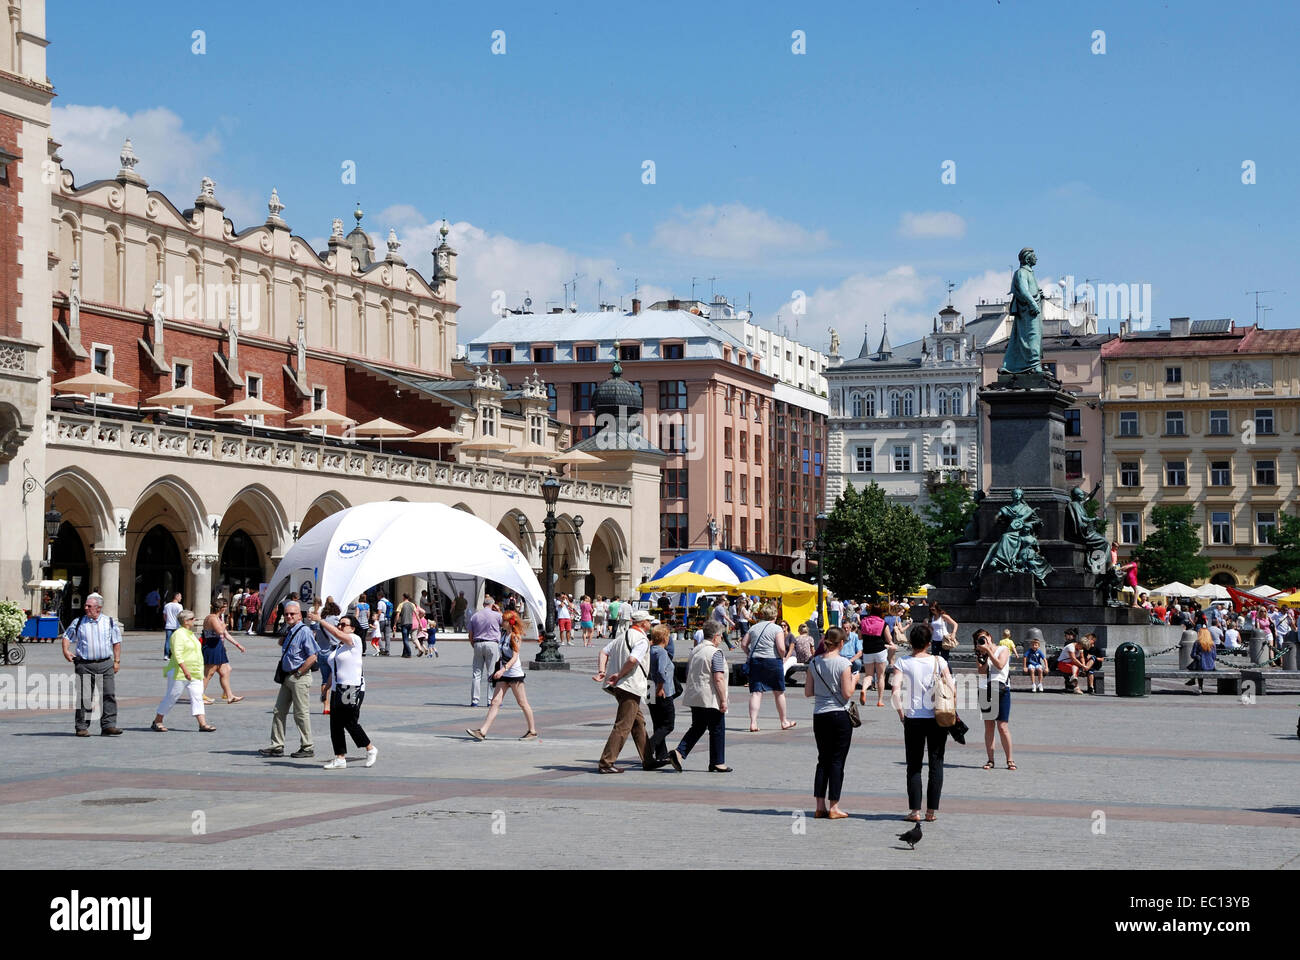 La città vecchia di Cracovia in Polonia con turisti sul mercato. Foto Stock